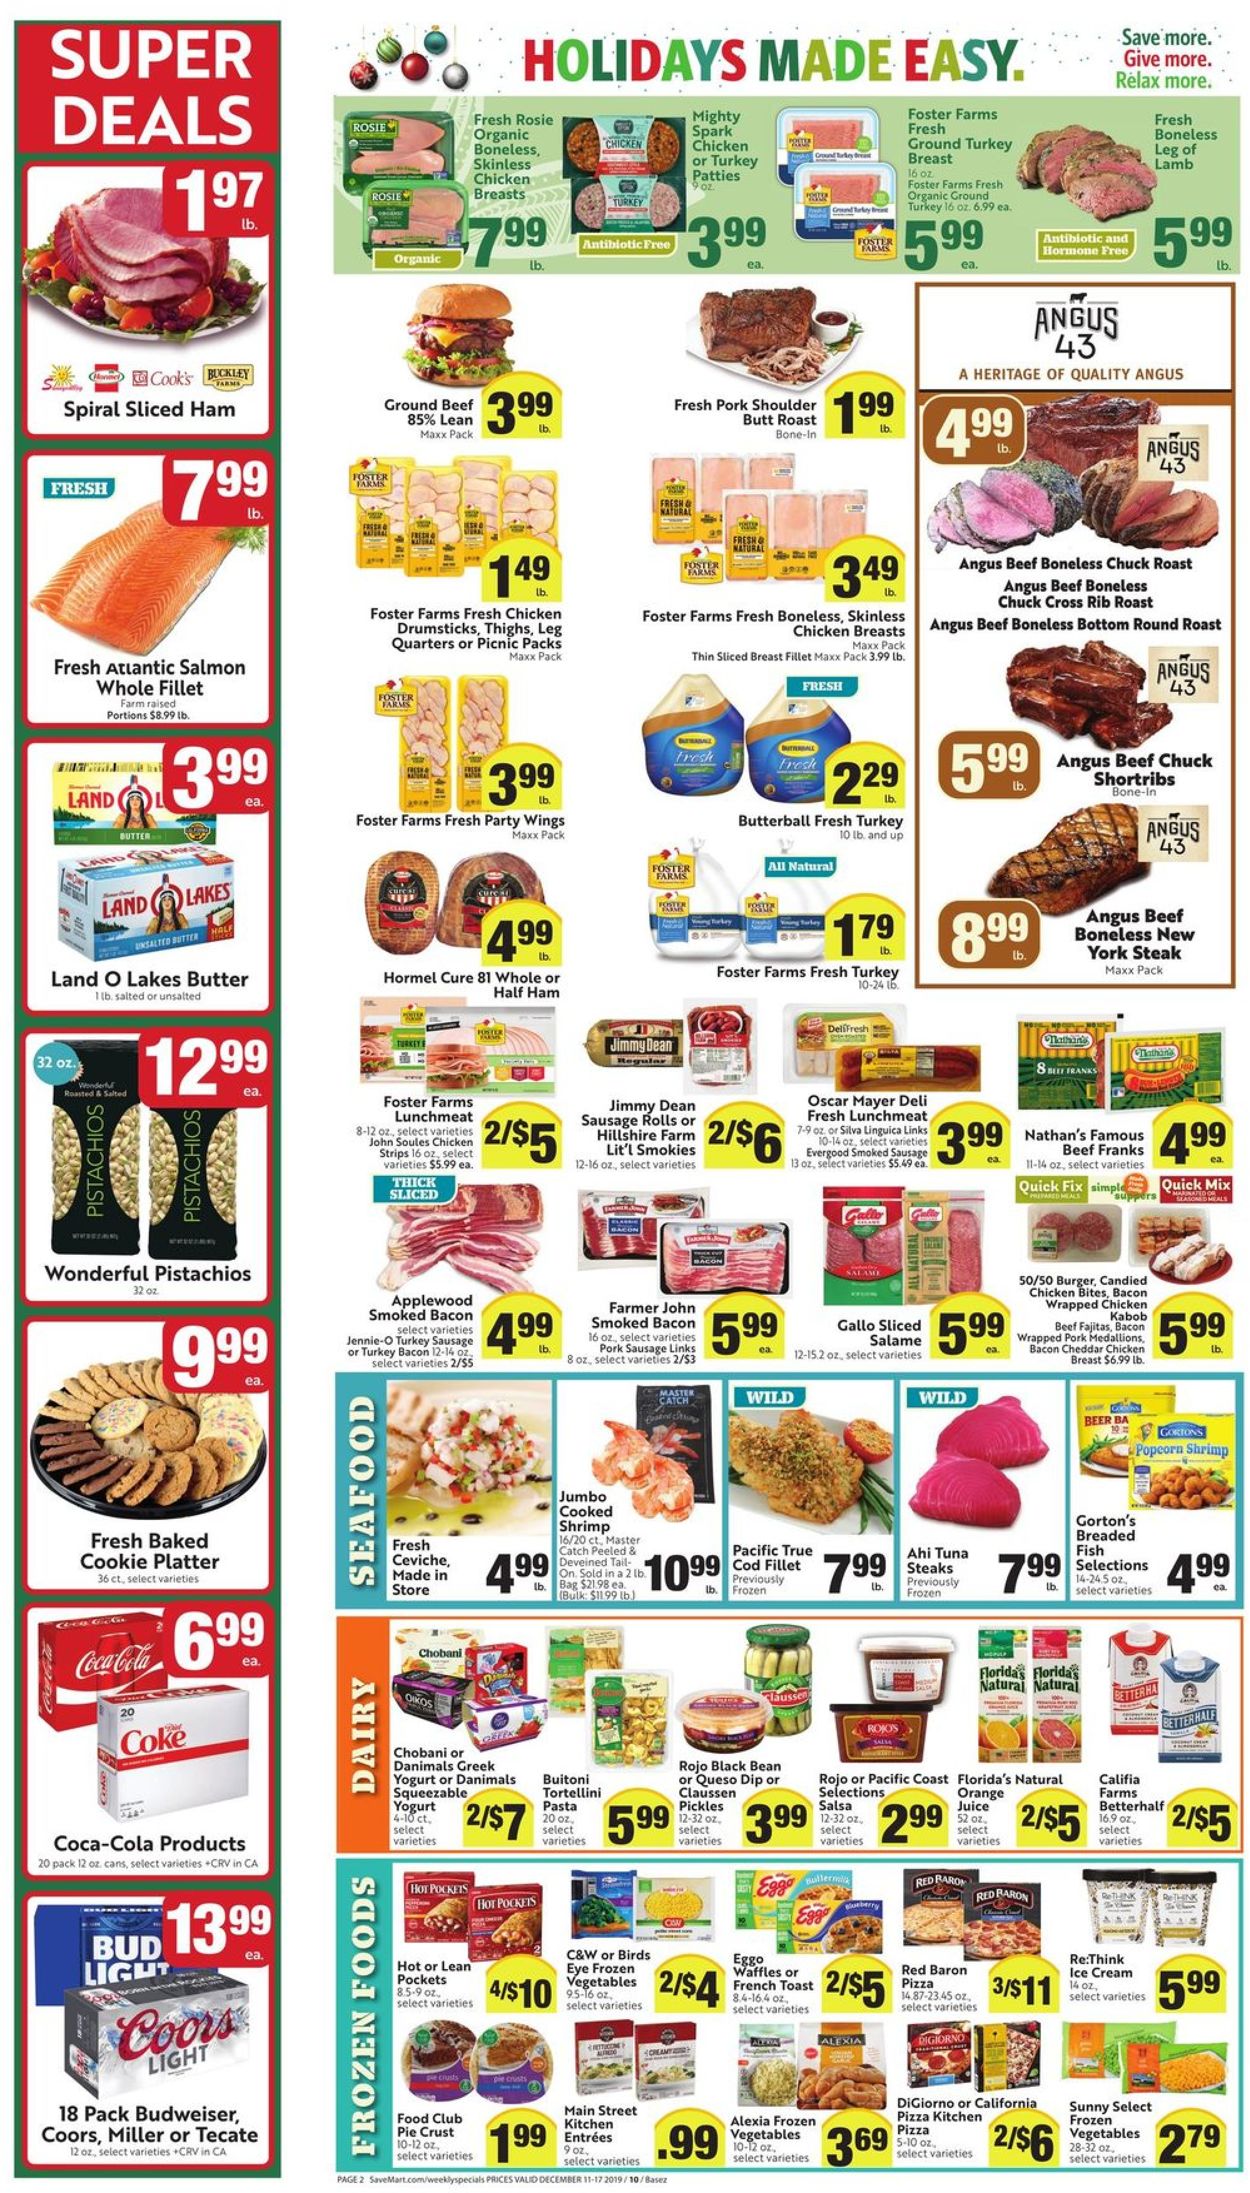 Save Mart - Holidays Ad 2019 Weekly Ad Circular - valid 12/11-12/17/2019 (Page 2)